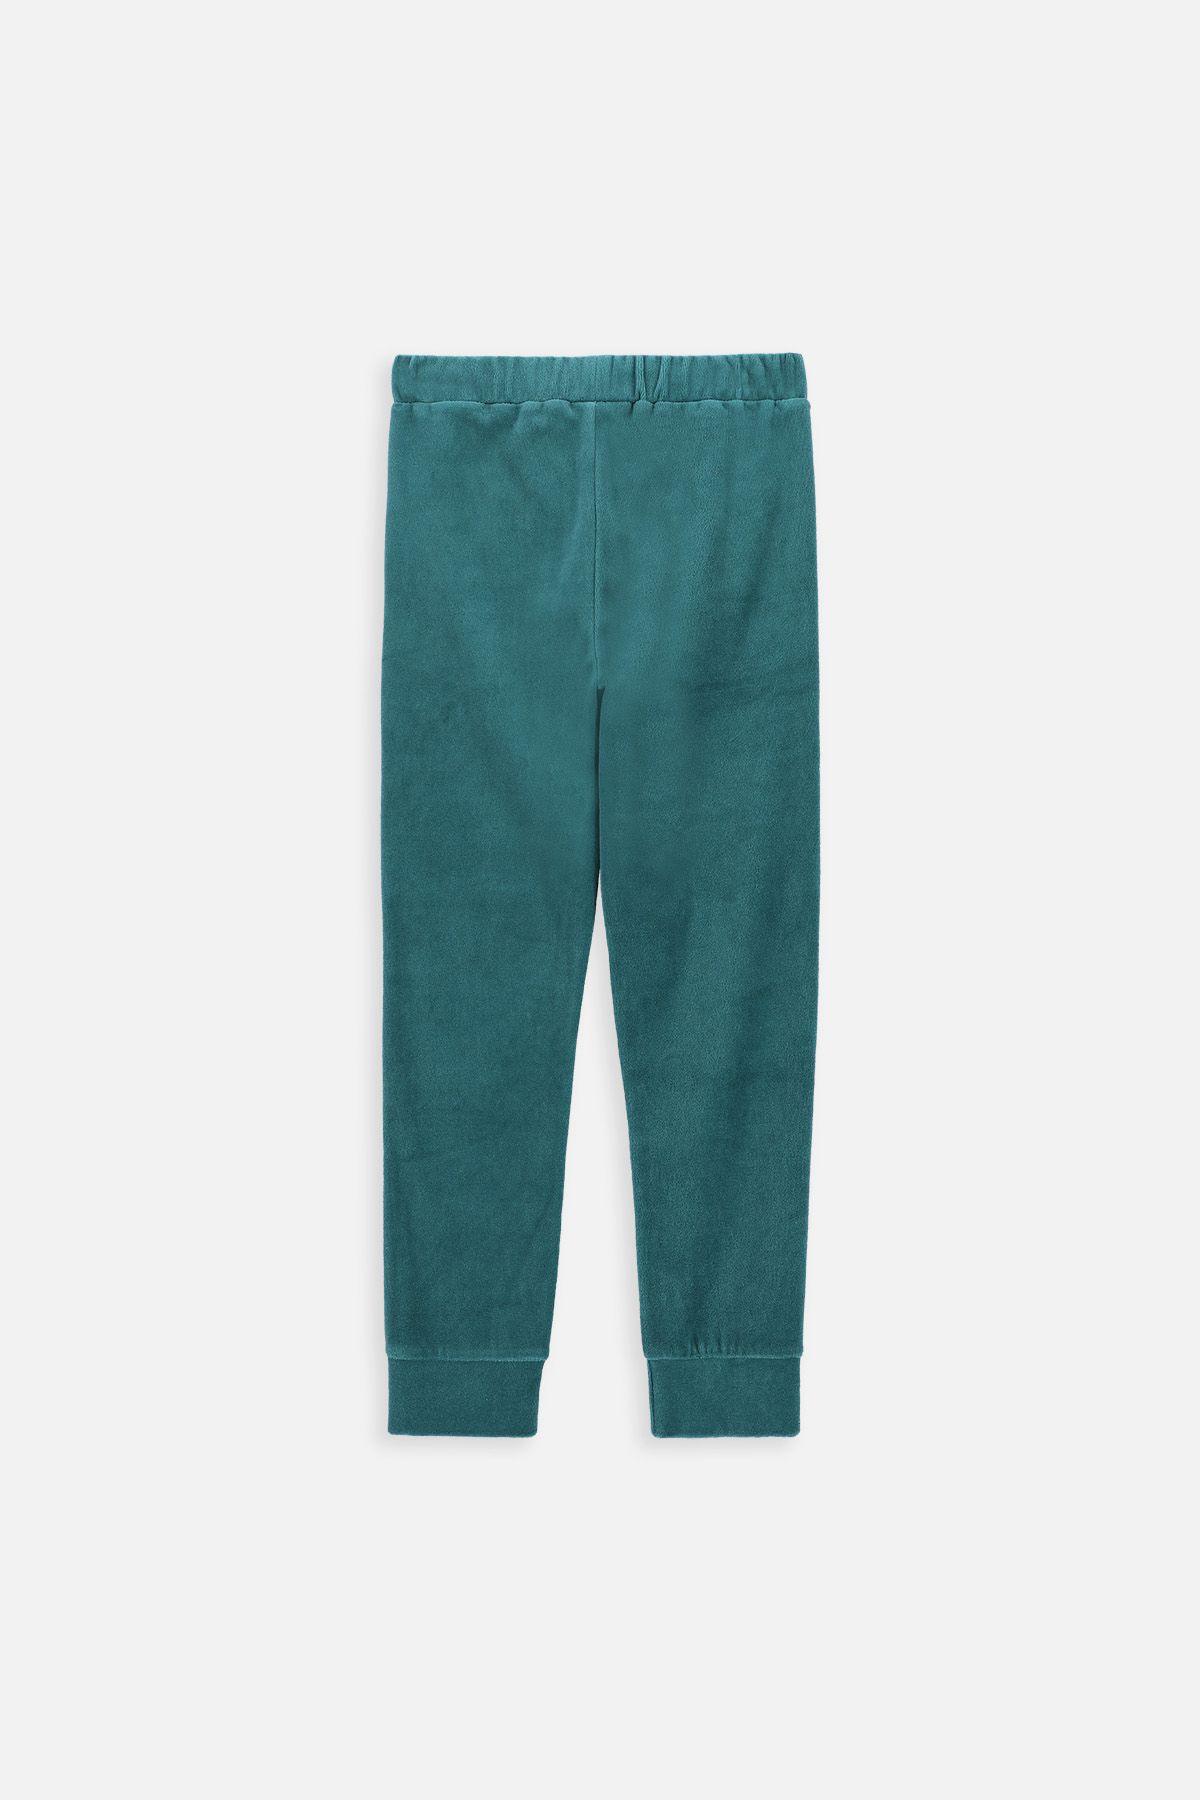 Spodnie dresowe zielone gładkie z kieszeniami 2221053